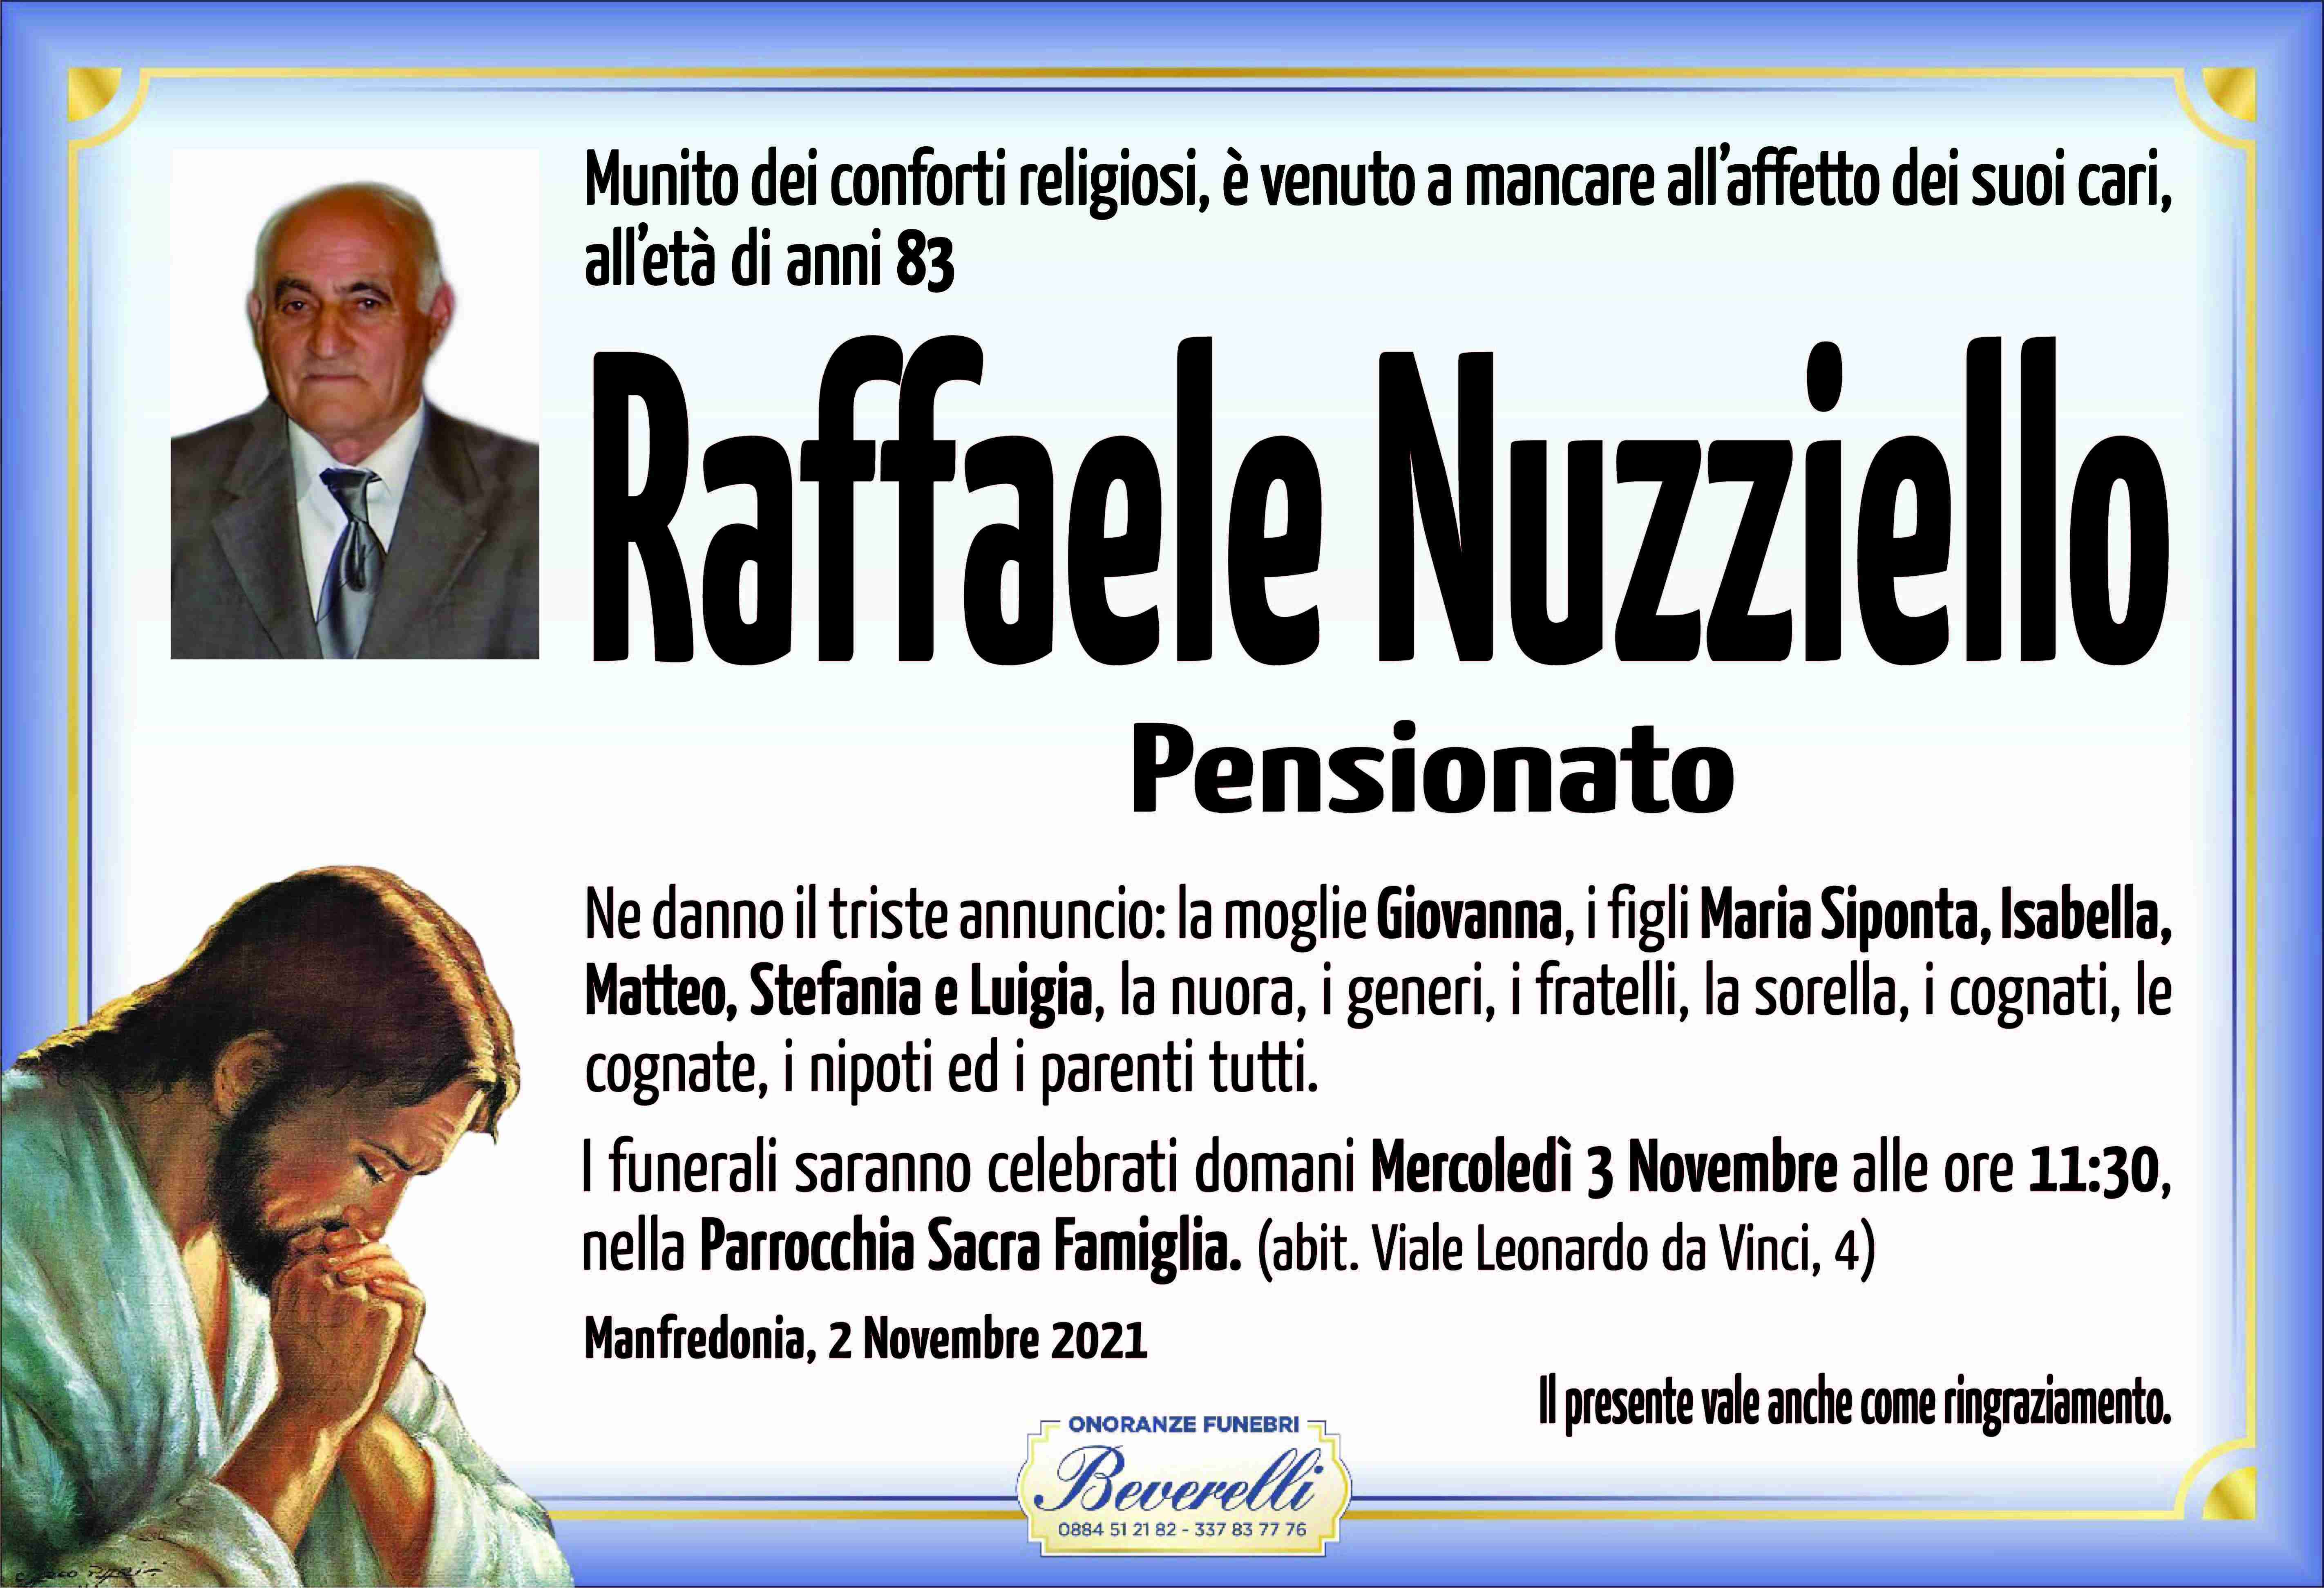 Raffaele Nuzziello